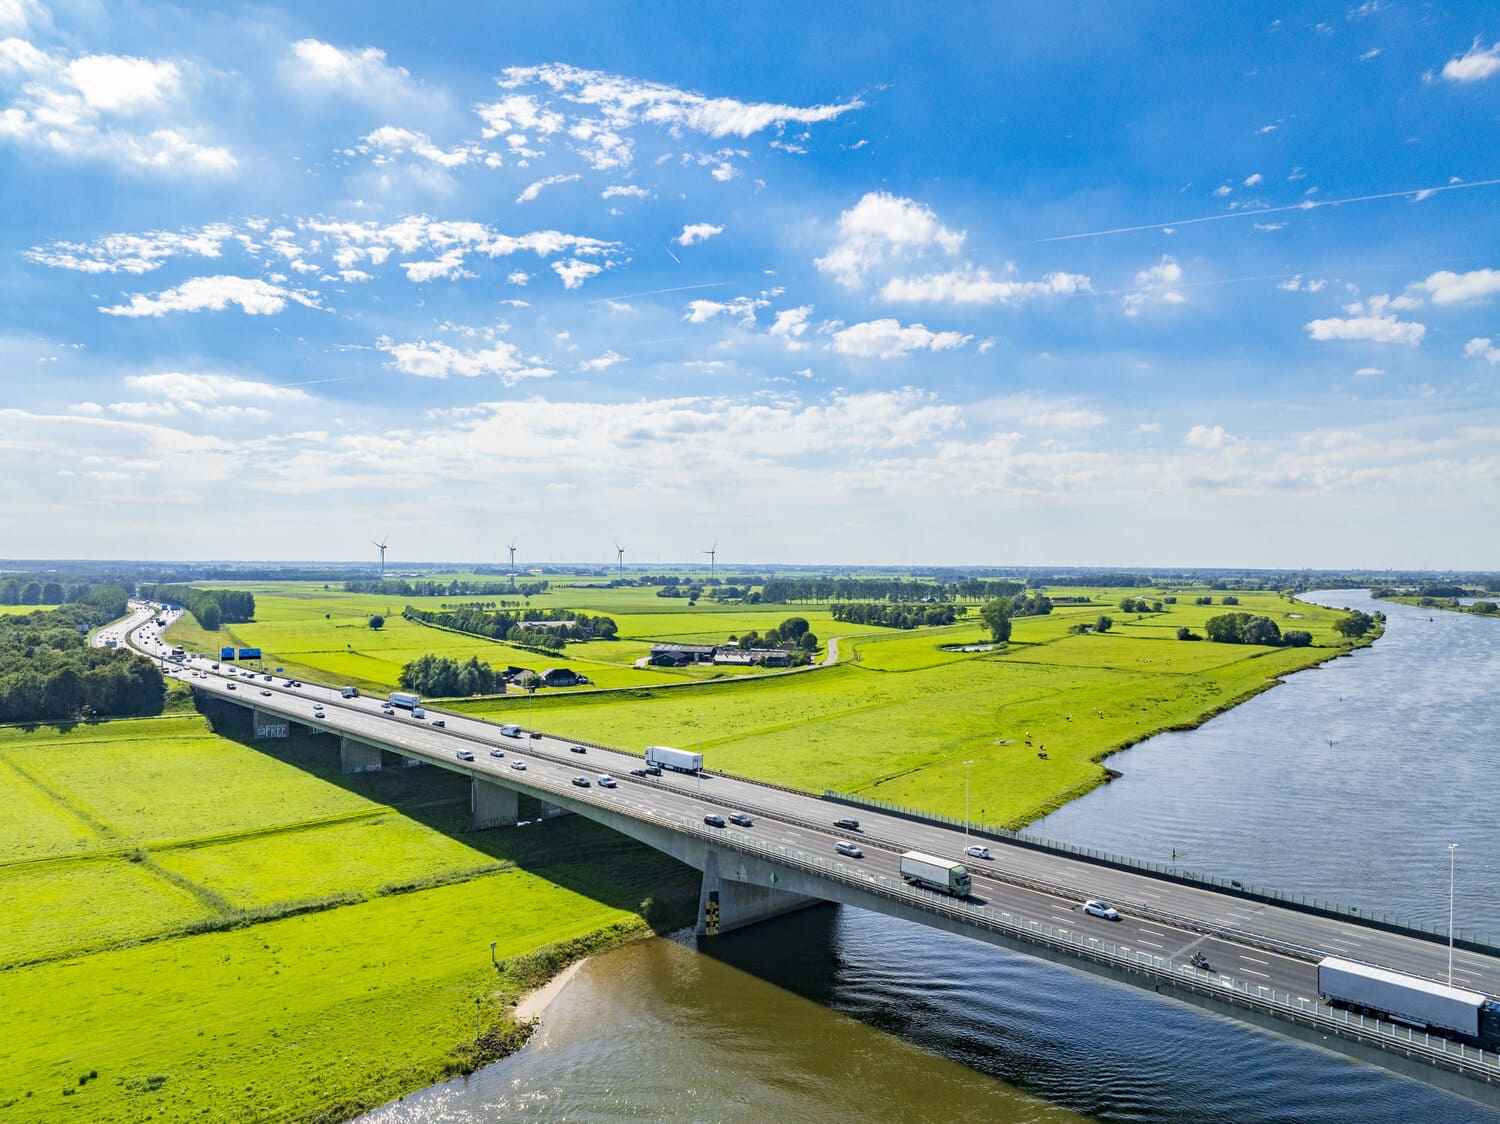 Widok z lotu ptaka na holenderski krajobraz z długim mostem autostradowym przecinającym rzekę. Most otoczony jest bujną zielenią pól i pól uprawnych. Na moście widać samochody jadące.